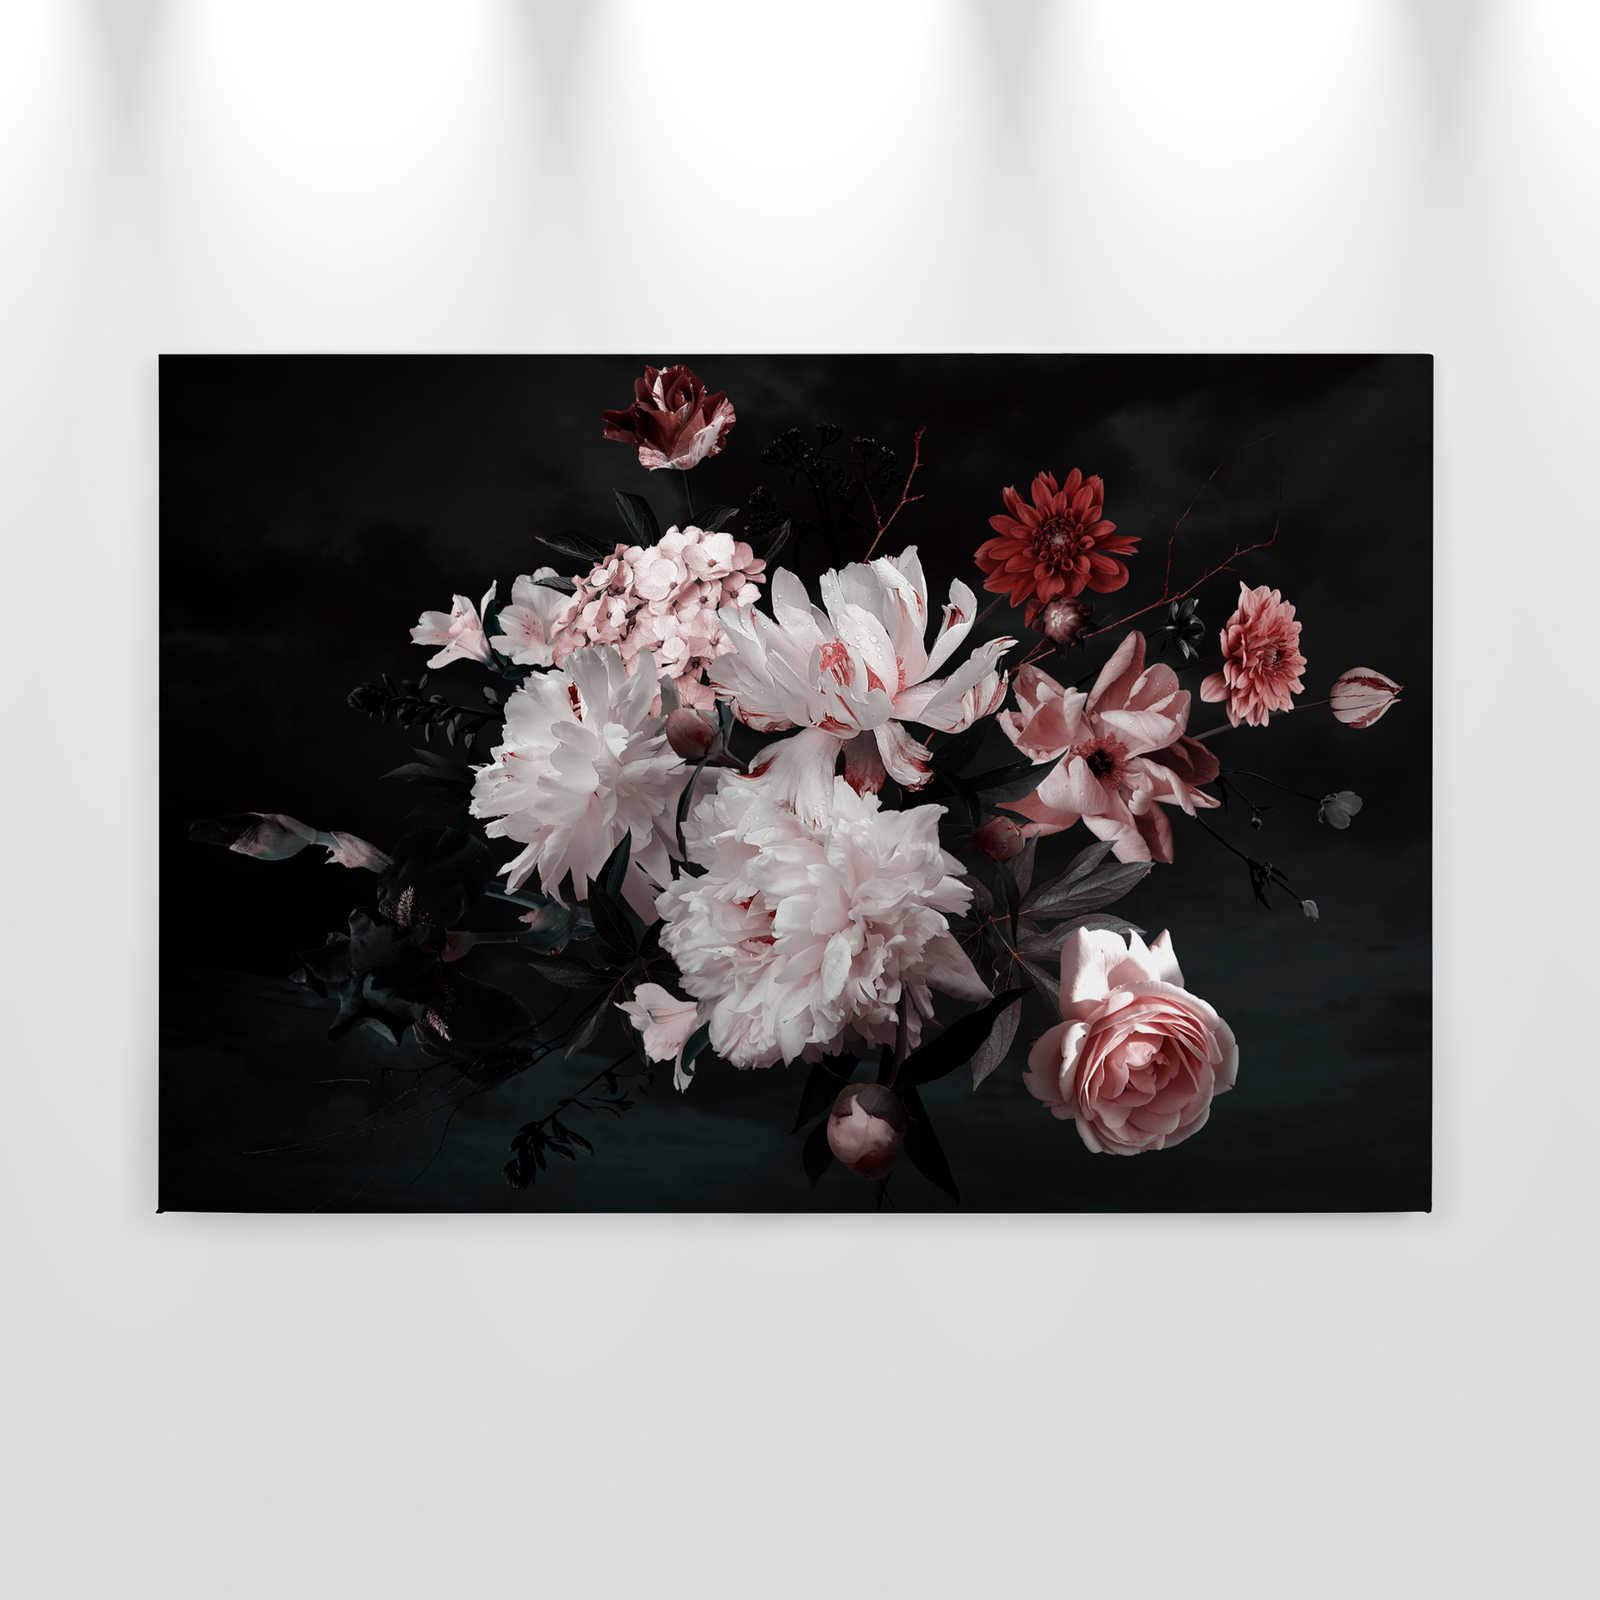             Blumenstrauß Leinwand – 0,90 m x 0,60 m
        